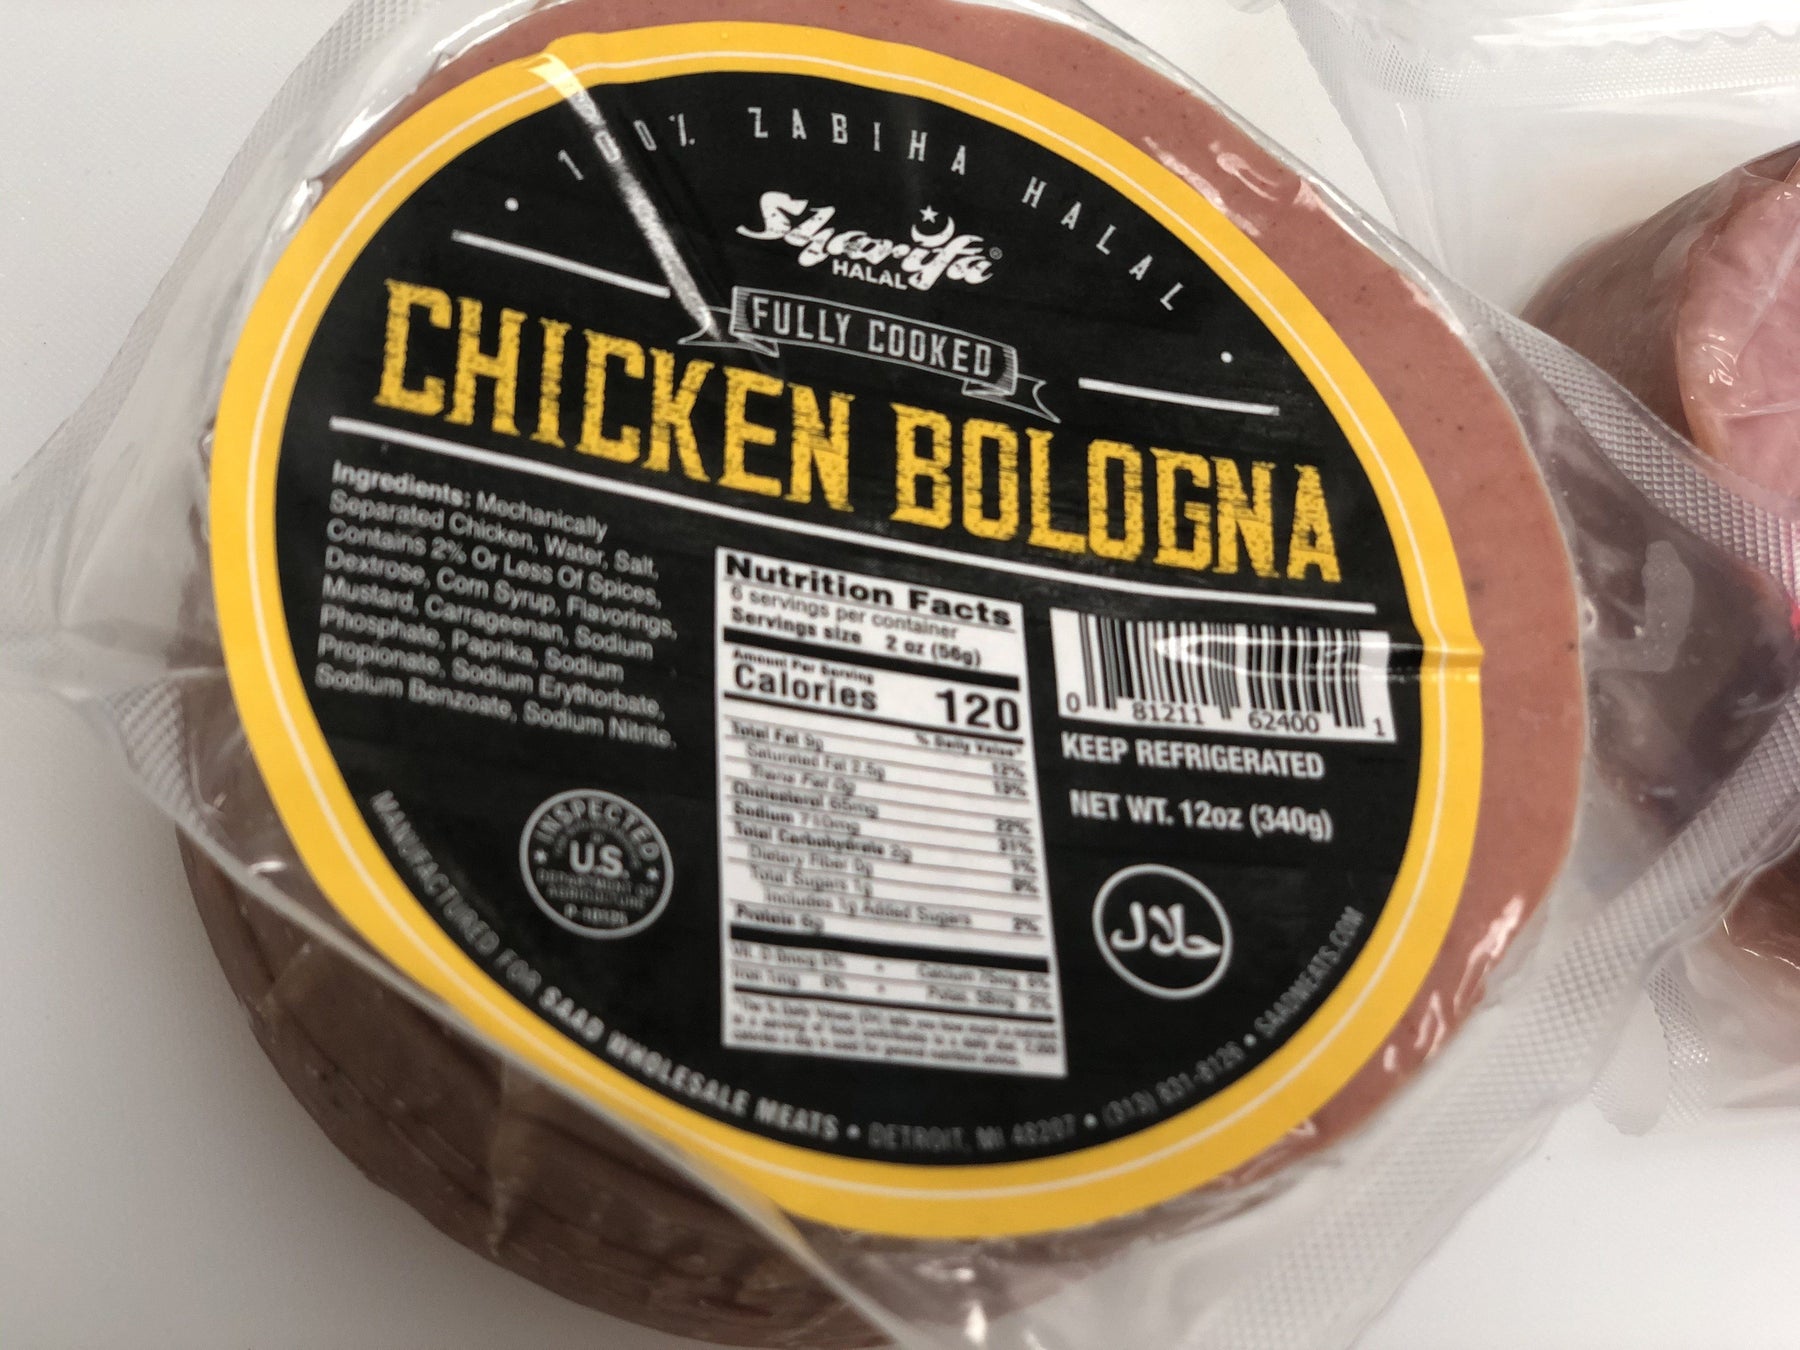 Sharifa Halal Chicken Bologna - WeGotMeat- Columbus Ohio Halal Meat Delivery